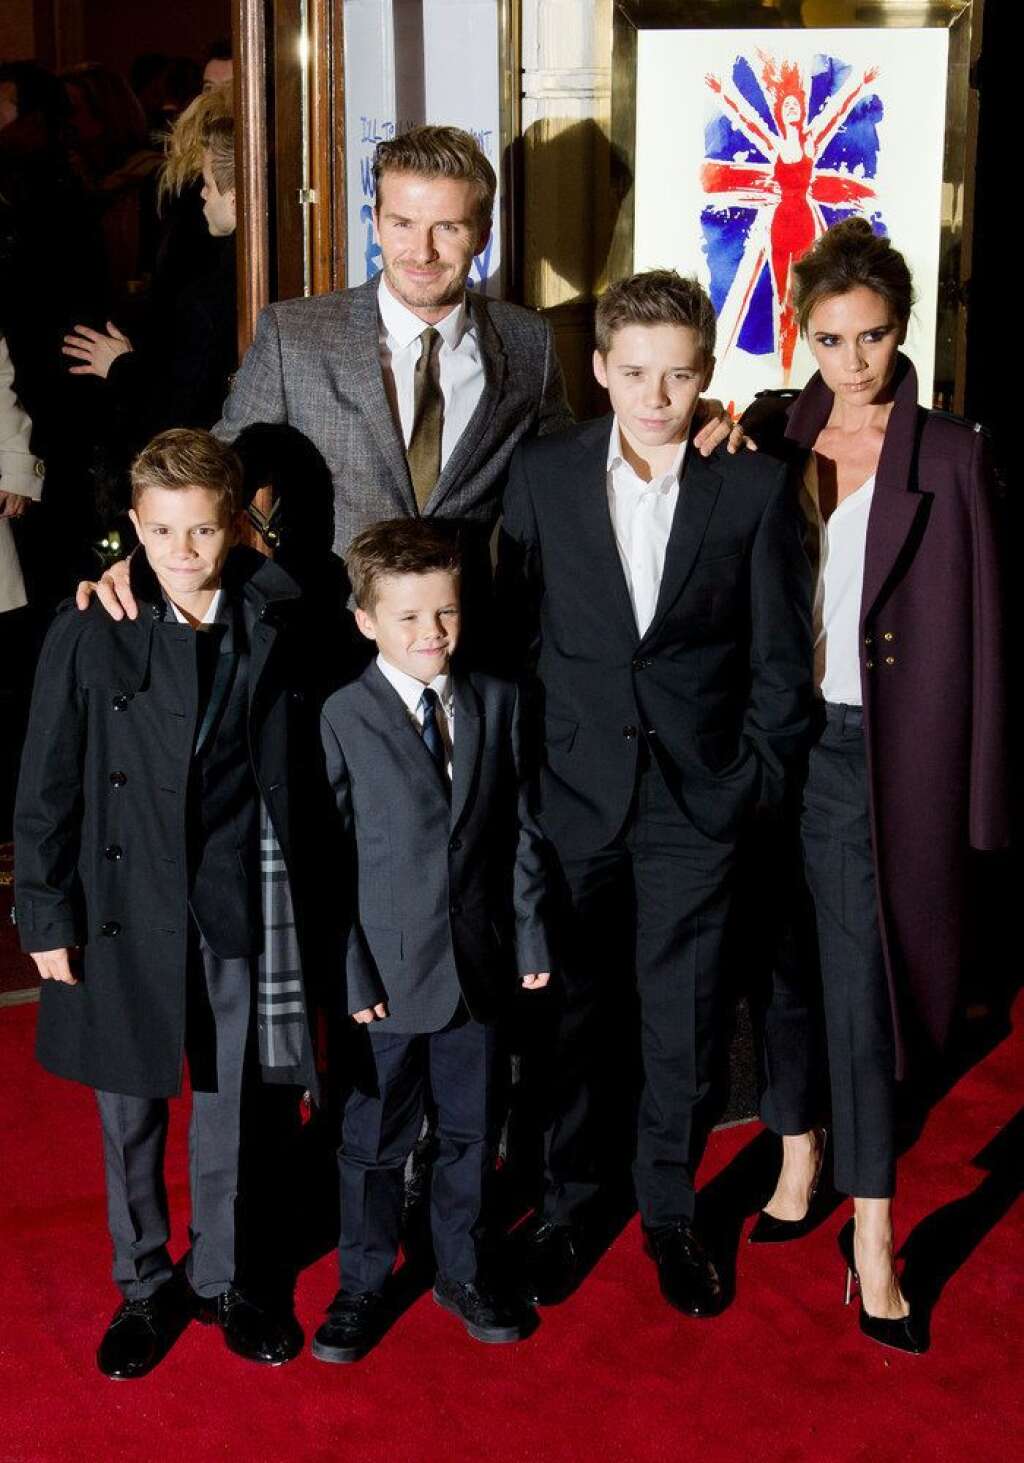 La famille Beckham - La famille Beckham (presque) au complet: Victoria et David, qui ont prénommé leurs fils Cruz, Romeo et Brooklyn. Celui-ci aurait-il été conçu dans la banlieue de New York?